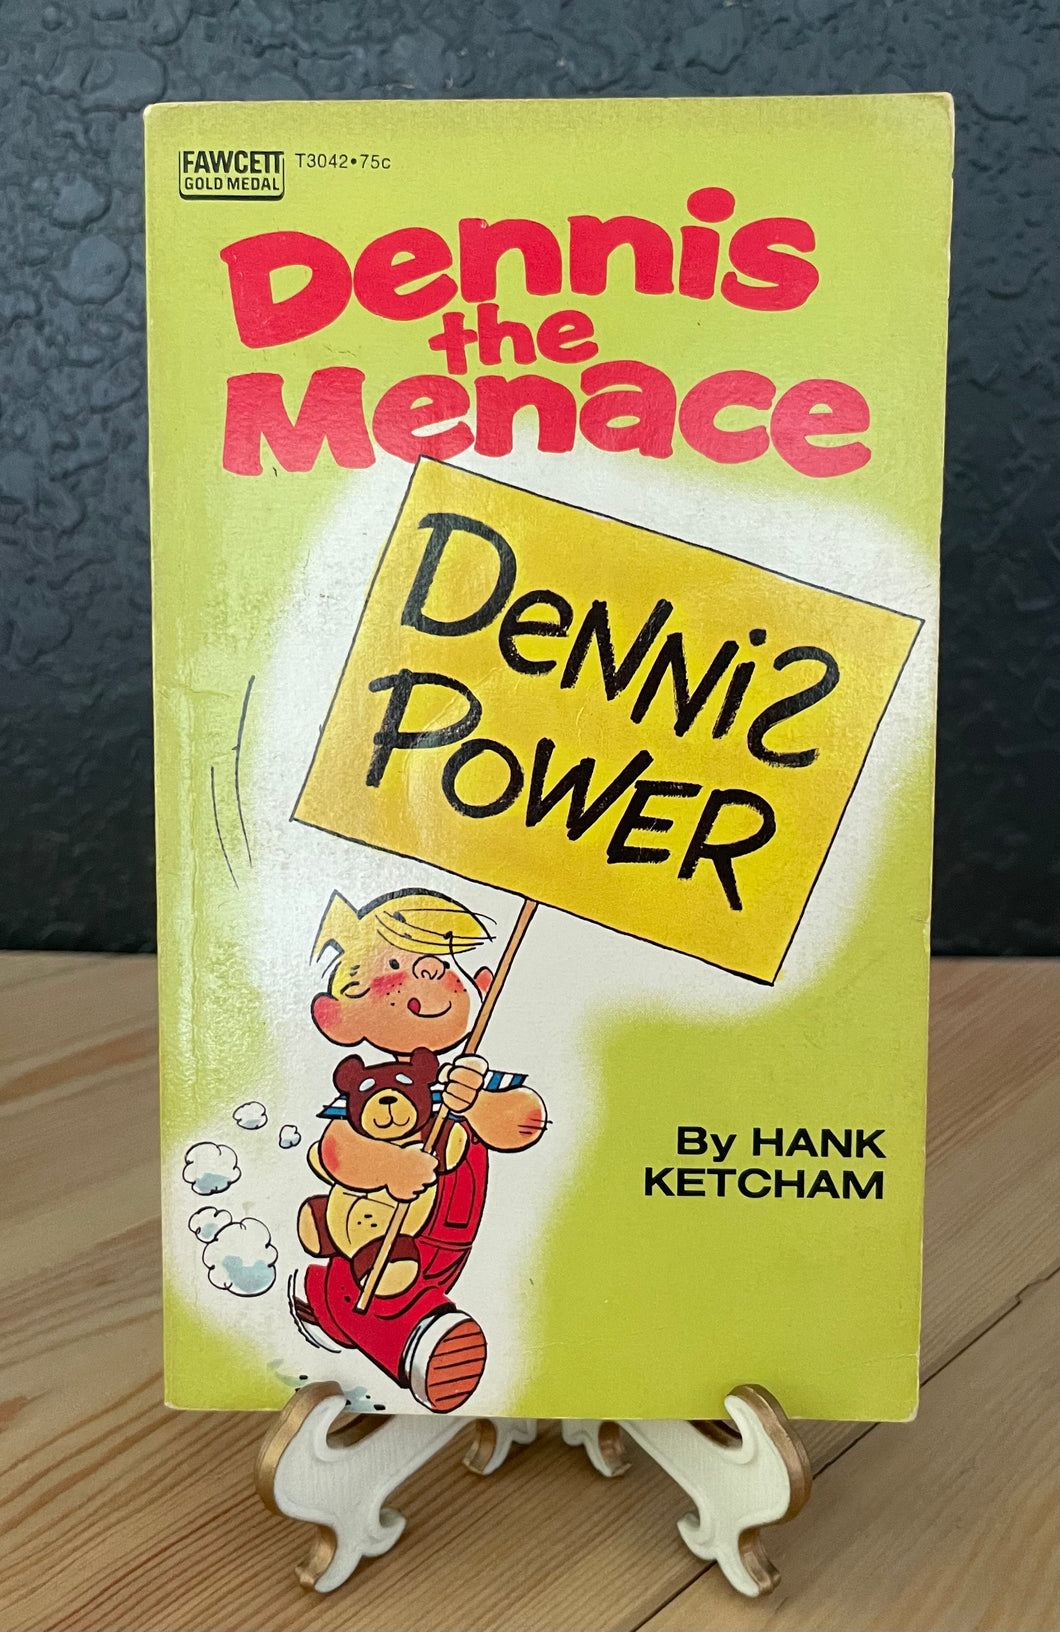 1972 “Dennis the Menace, Dennis Power” Vintage Paperback Book